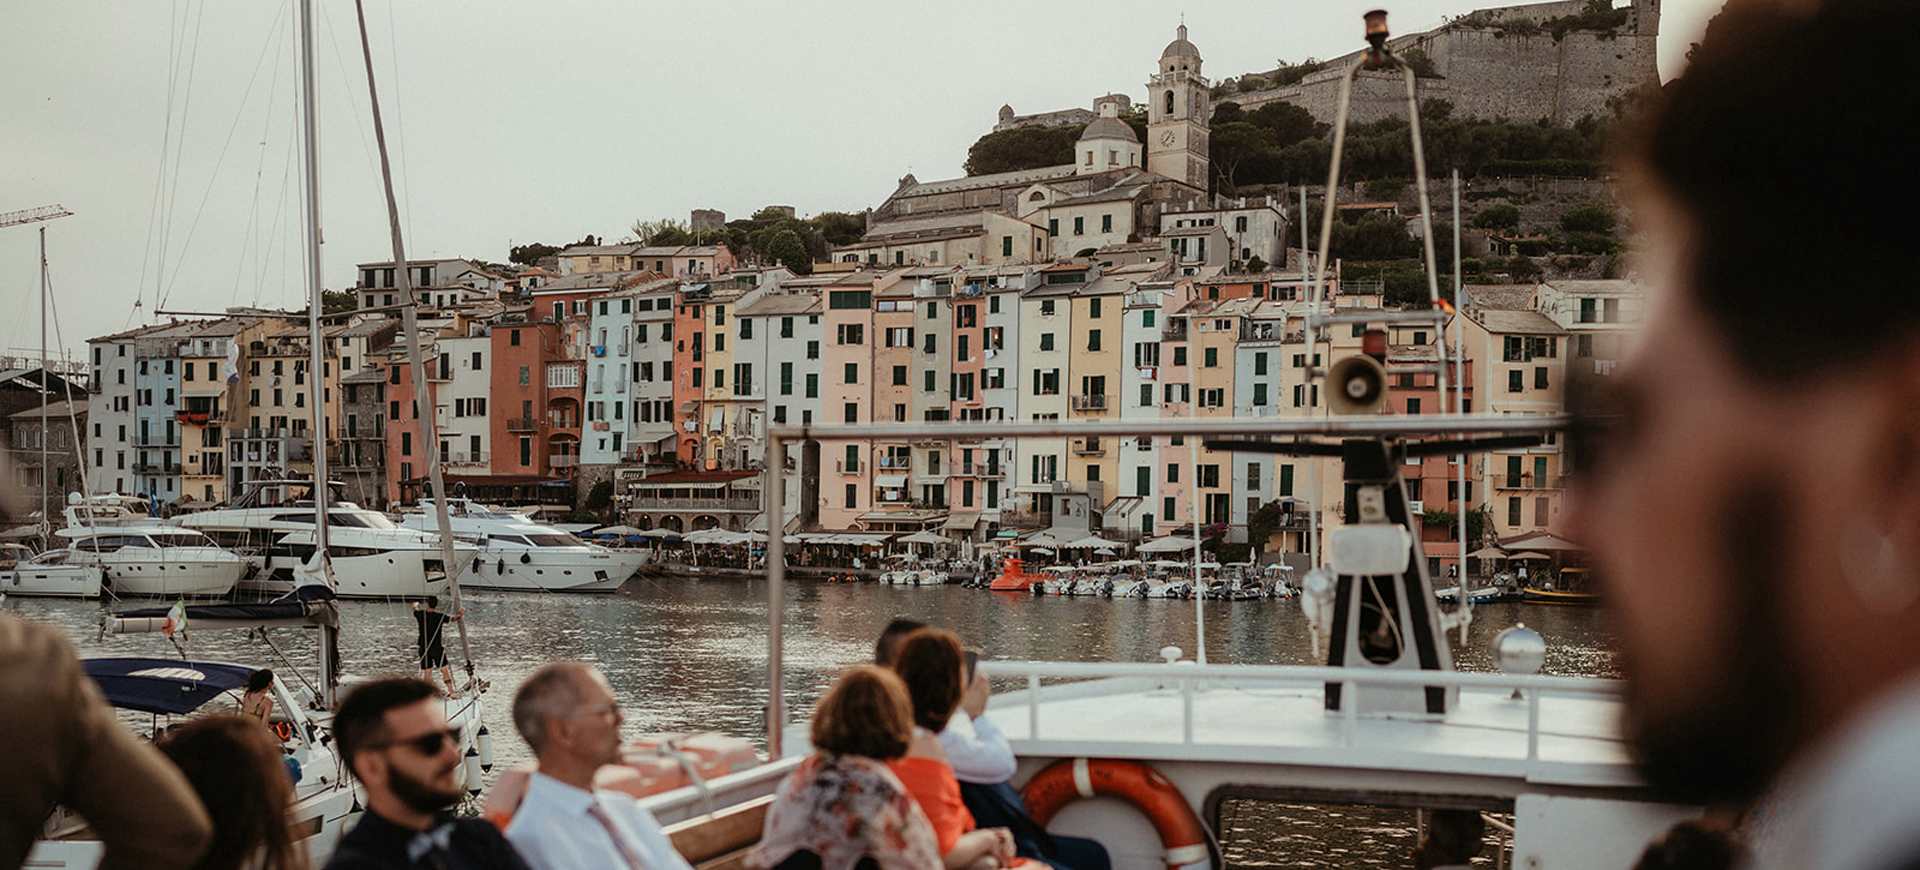 Photoshoot Tour Adventure in Cinque Terre